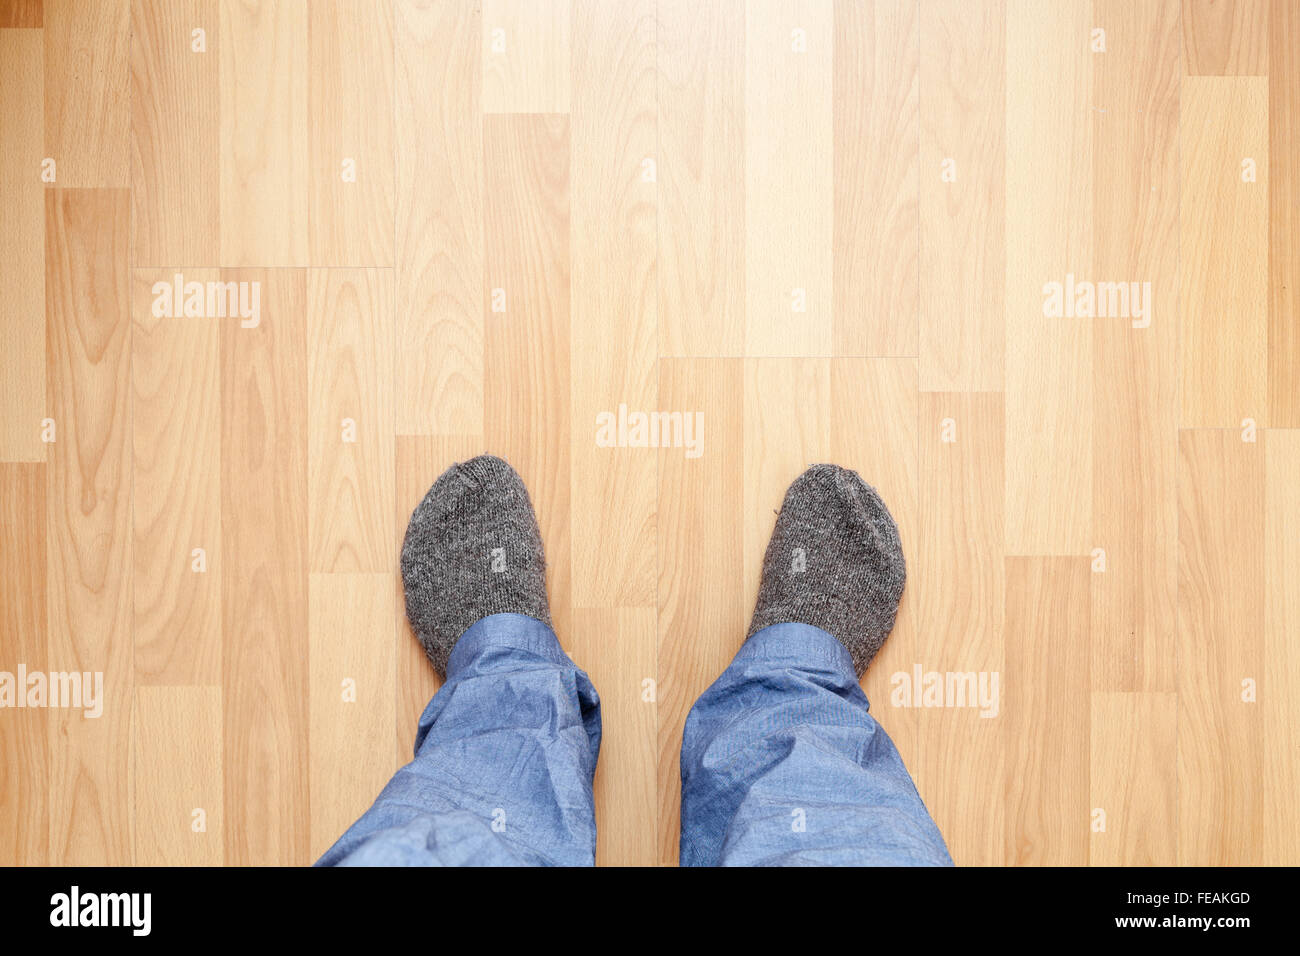 Pies masculinos en azul, pantalones largos y calcetines de lana gris de pie en el piso de madera Foto de stock